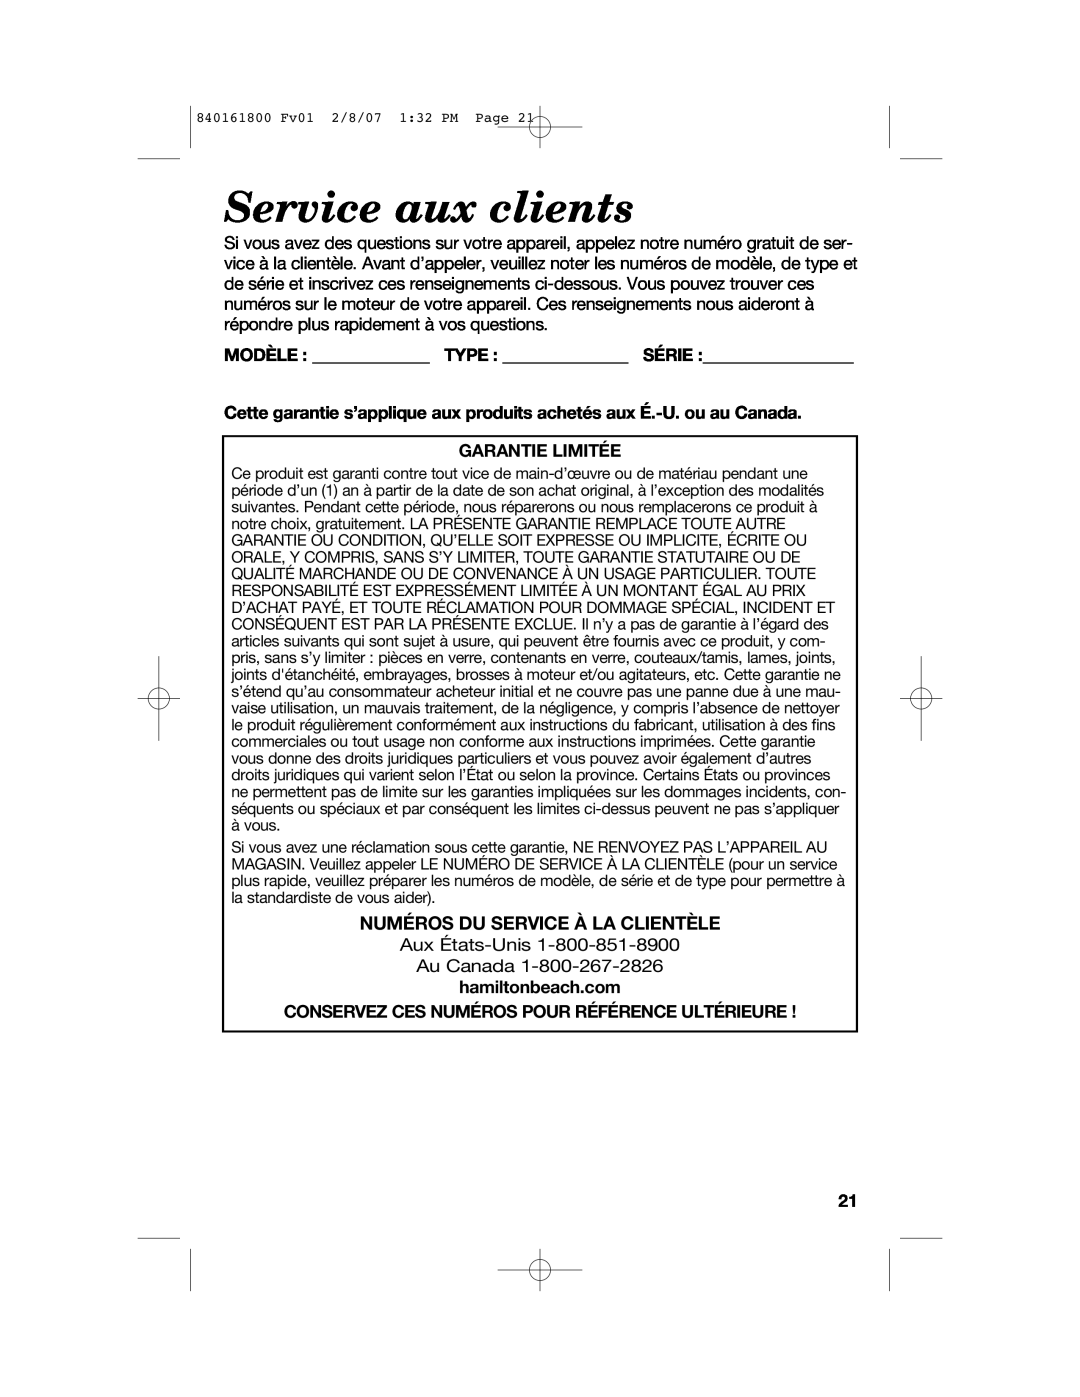 Hamilton Beach 840161800 manual Service aux clients, Modèle Type Série, Garantie Limitée, Numéros Du Service À La Clientèle 